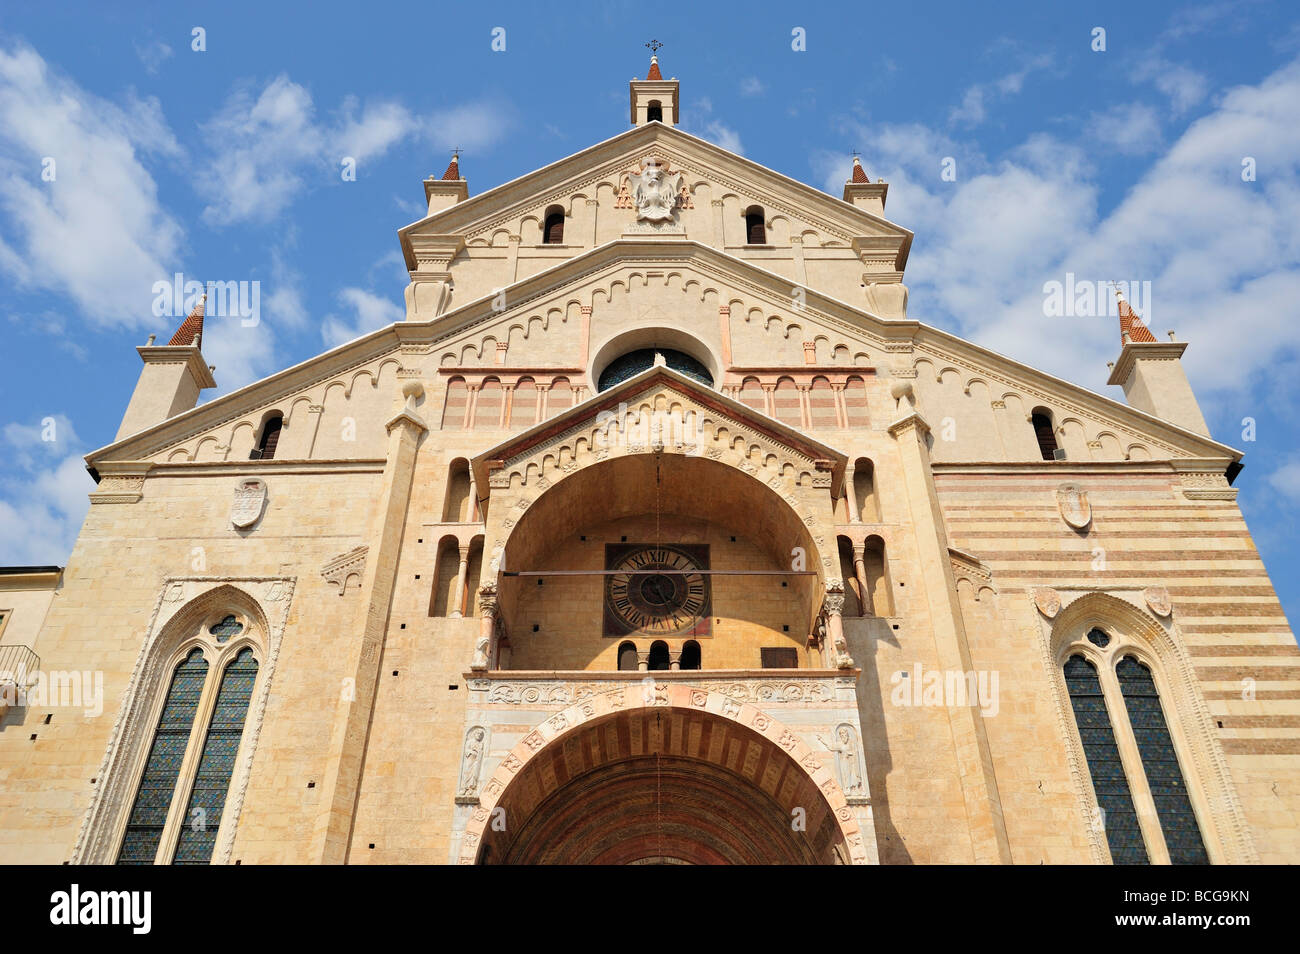 Cathedral, Verona, Province of Verona, Veneto, italy Stock Photo